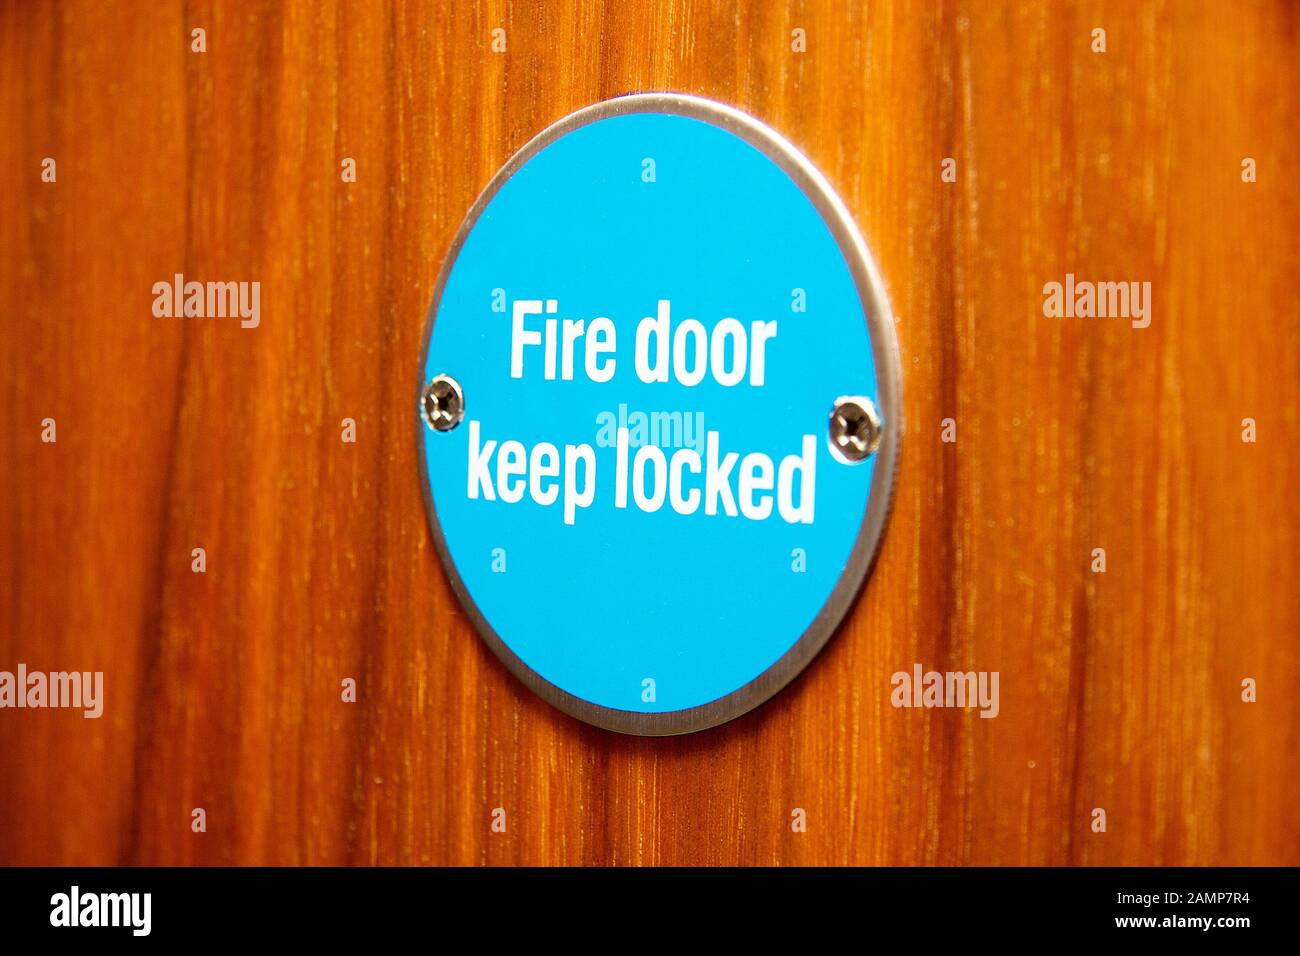 Schild für die Brandschutztür an einer Holztür in einem öffentlichen Gebäude. Brandschutztür Geschlossen Halten Stockfoto